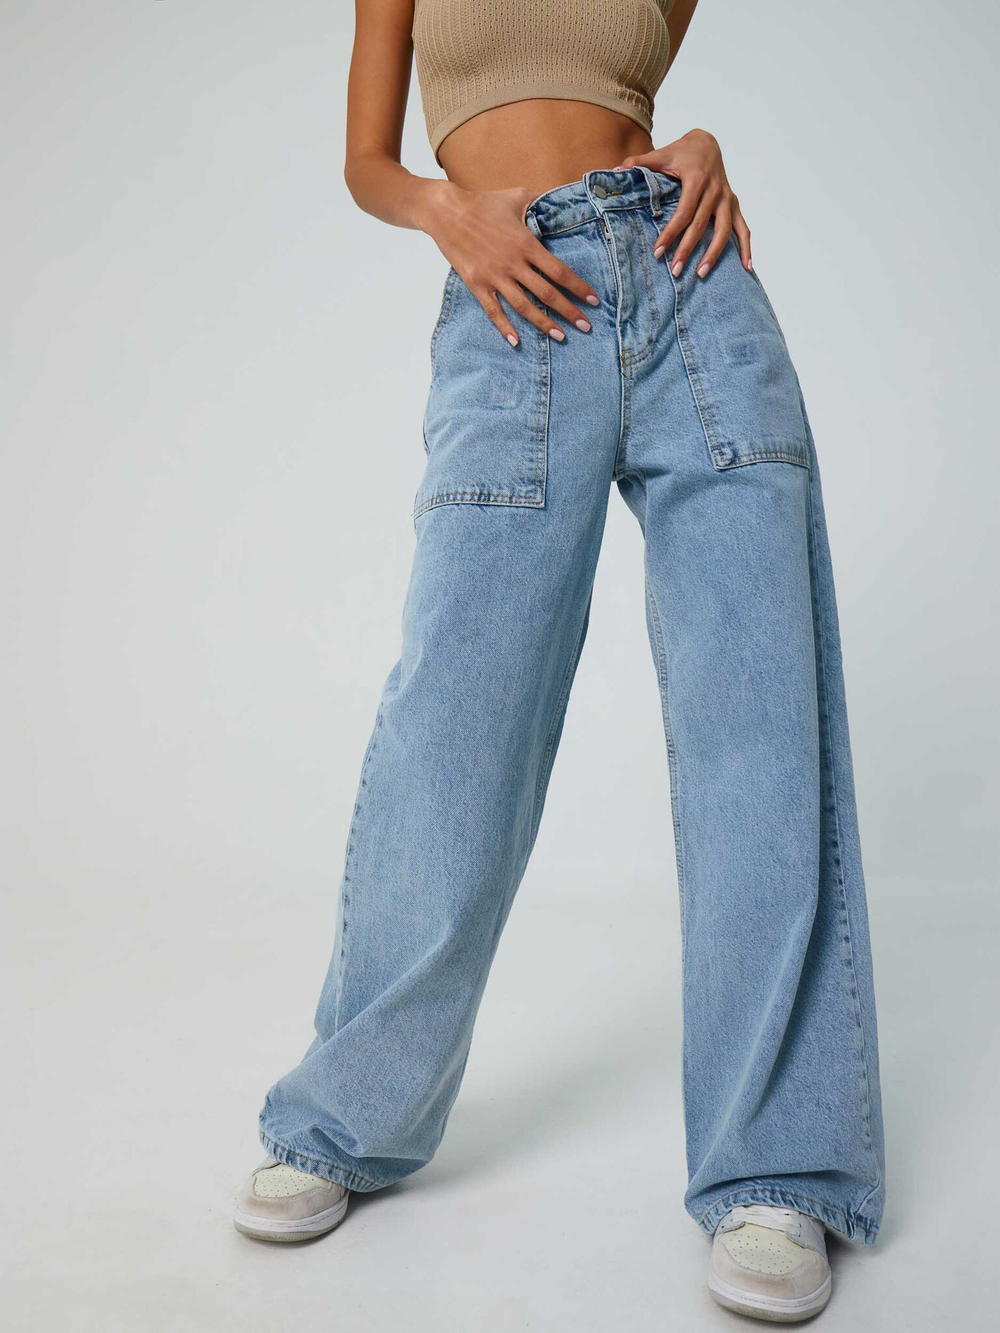 Девушка в джинсах со спины - 77 фото